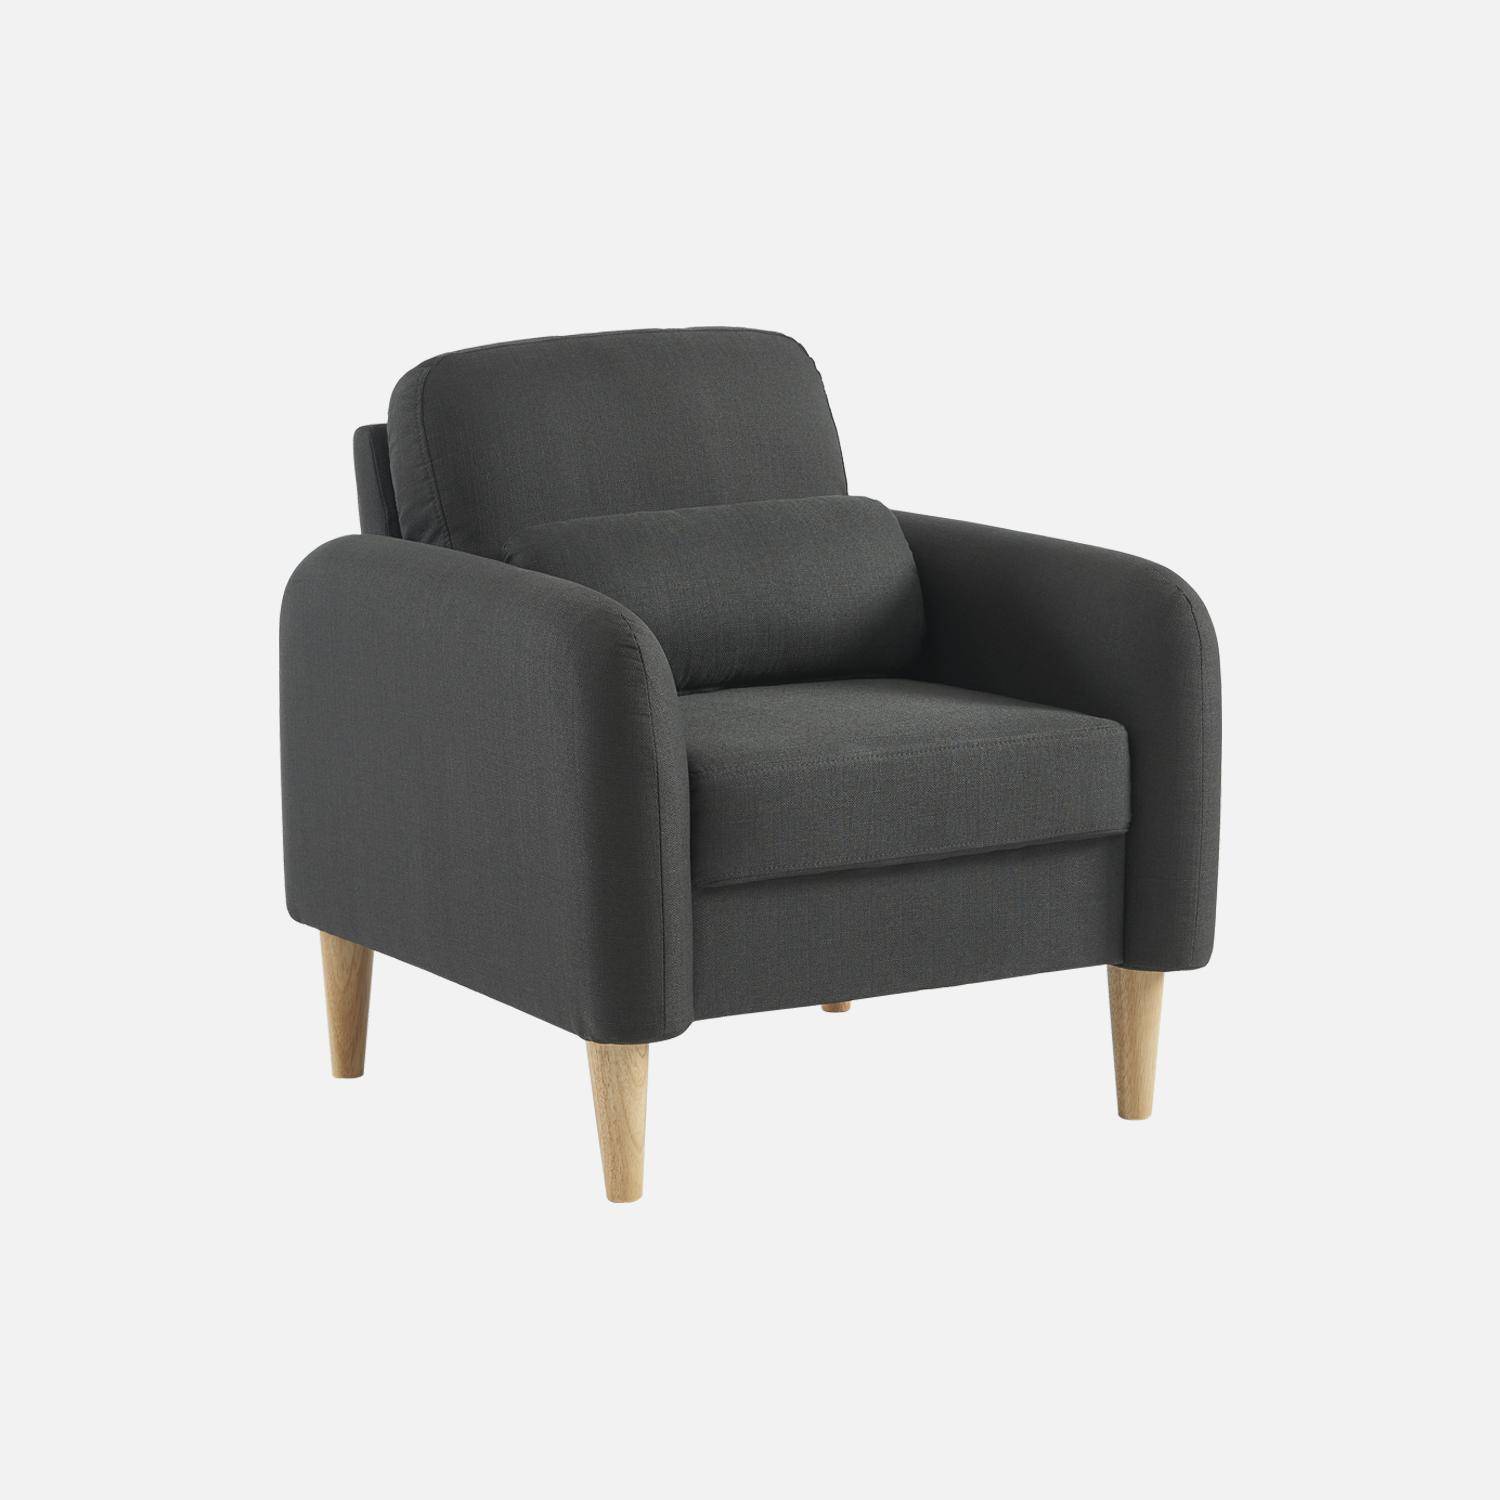 Sillón de tela gris oscuro - Bjorn - Sillón 1 plaza fijo recto patas  madera, sillón escandinavo